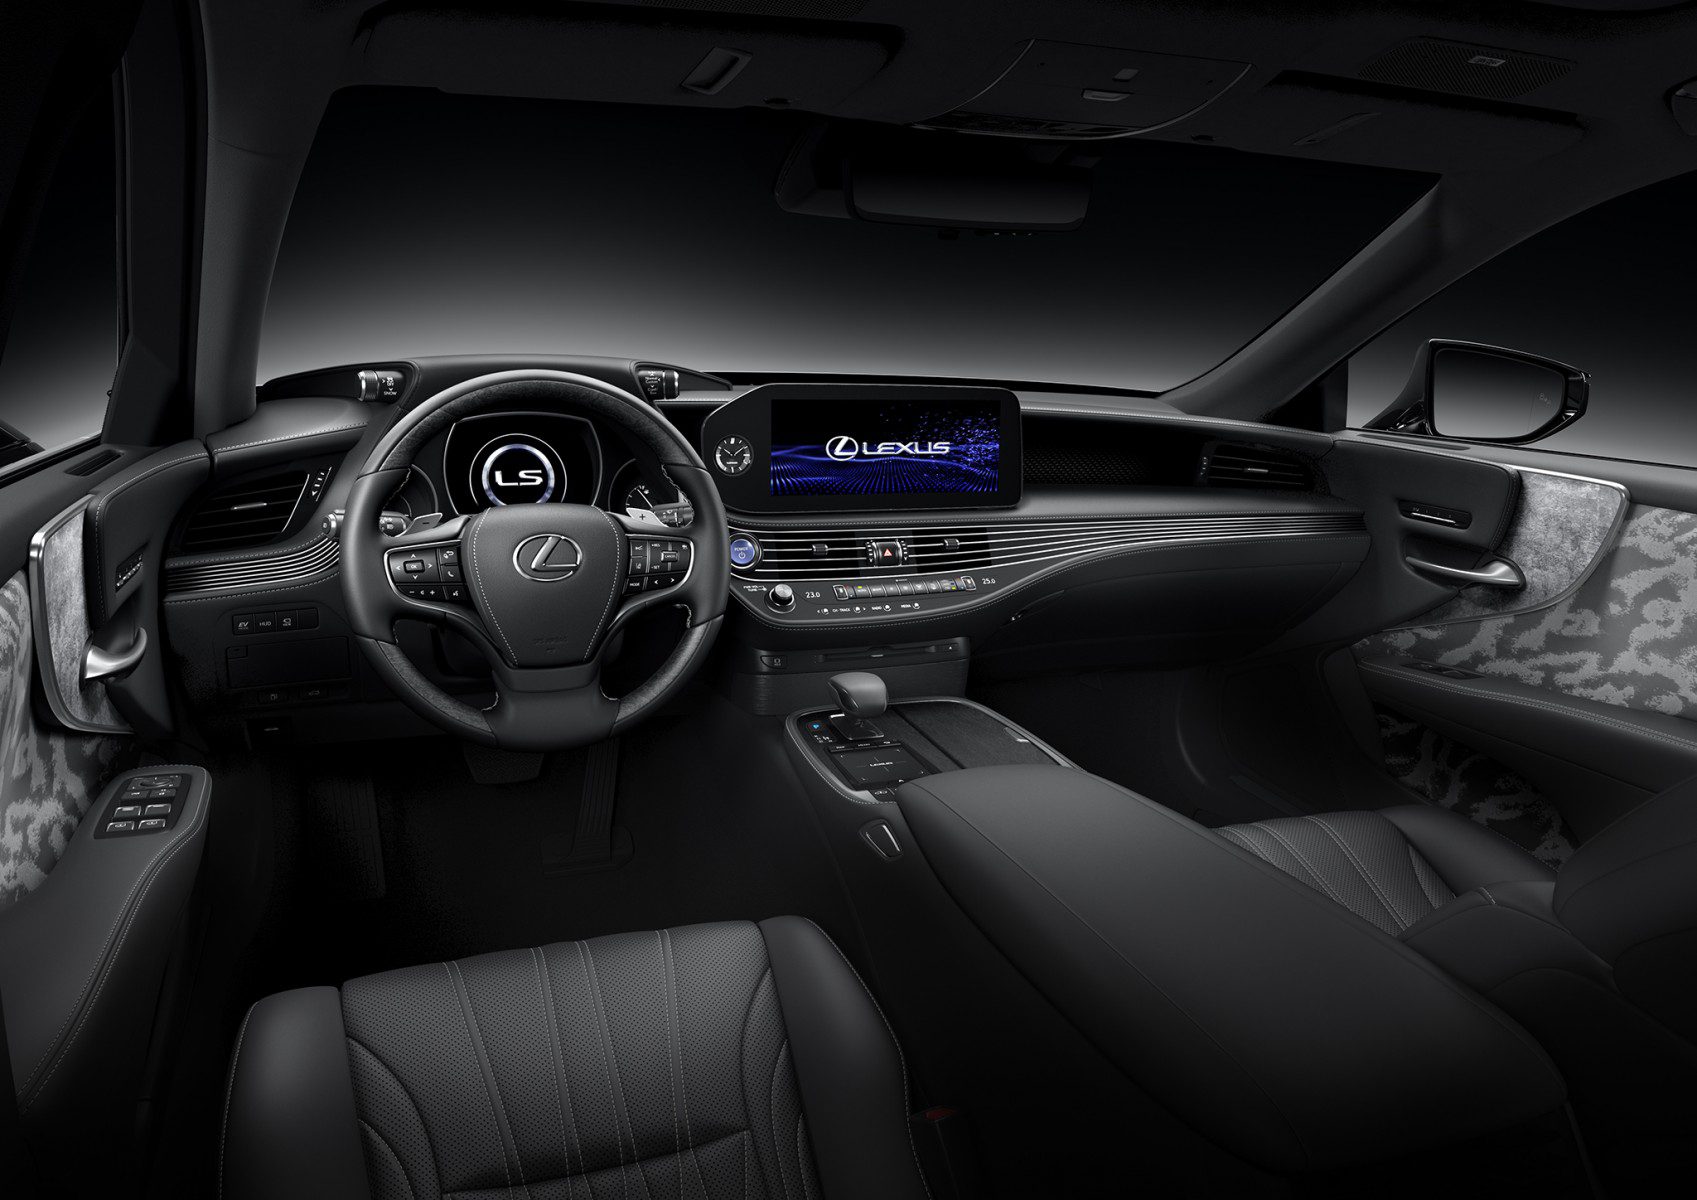 Lexus LS460 interior - Cockpit